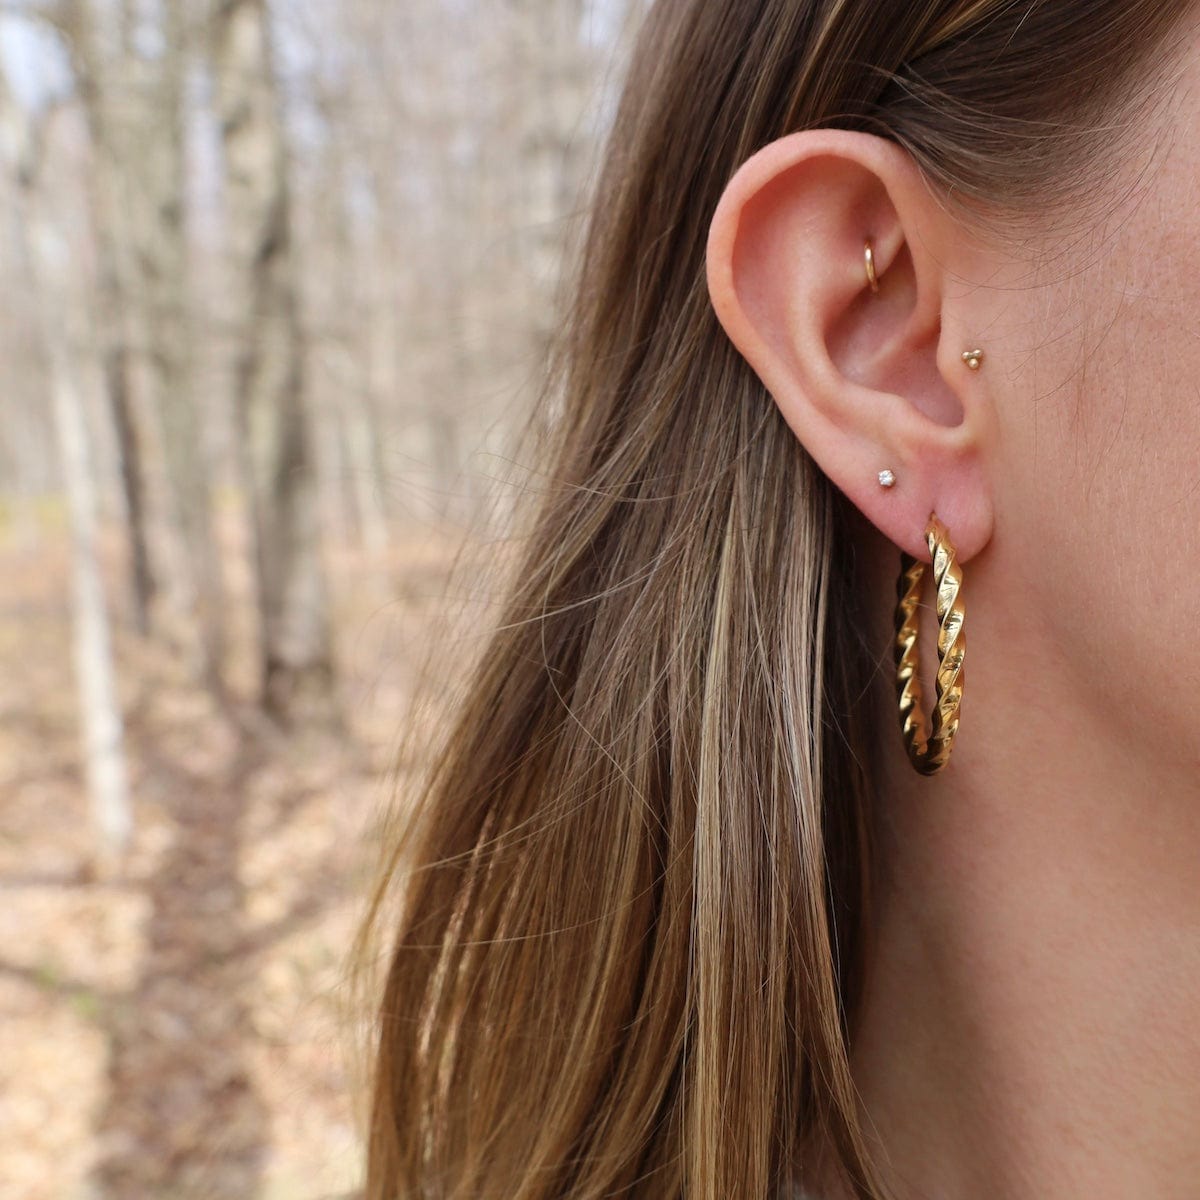 EAR-GPL ELEA // The Ancient hoop earrings - 18k gold plate